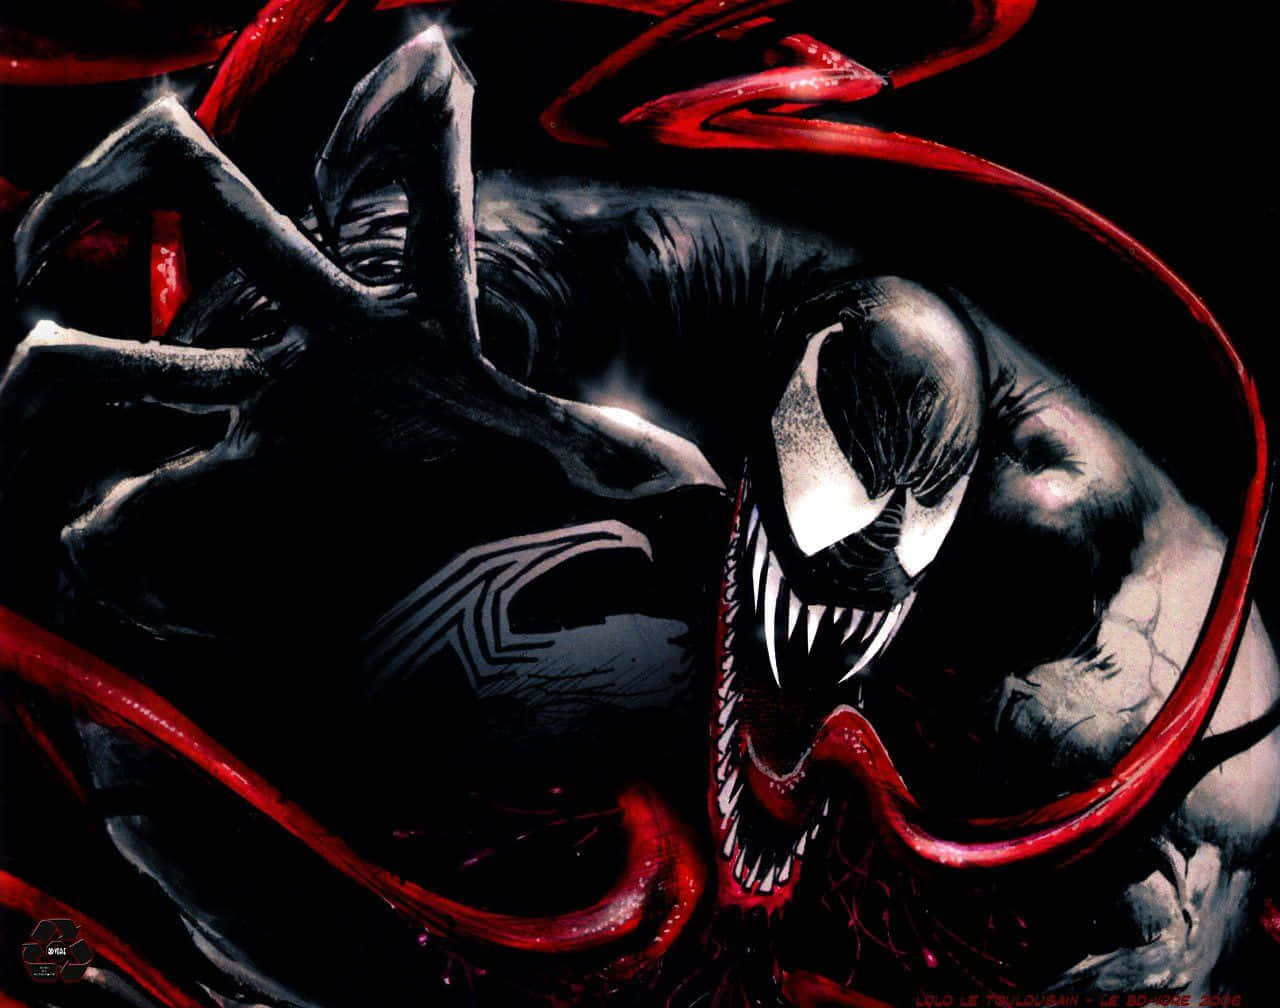 Attraenterappresentazione Astratta Di Venom. Sfondo